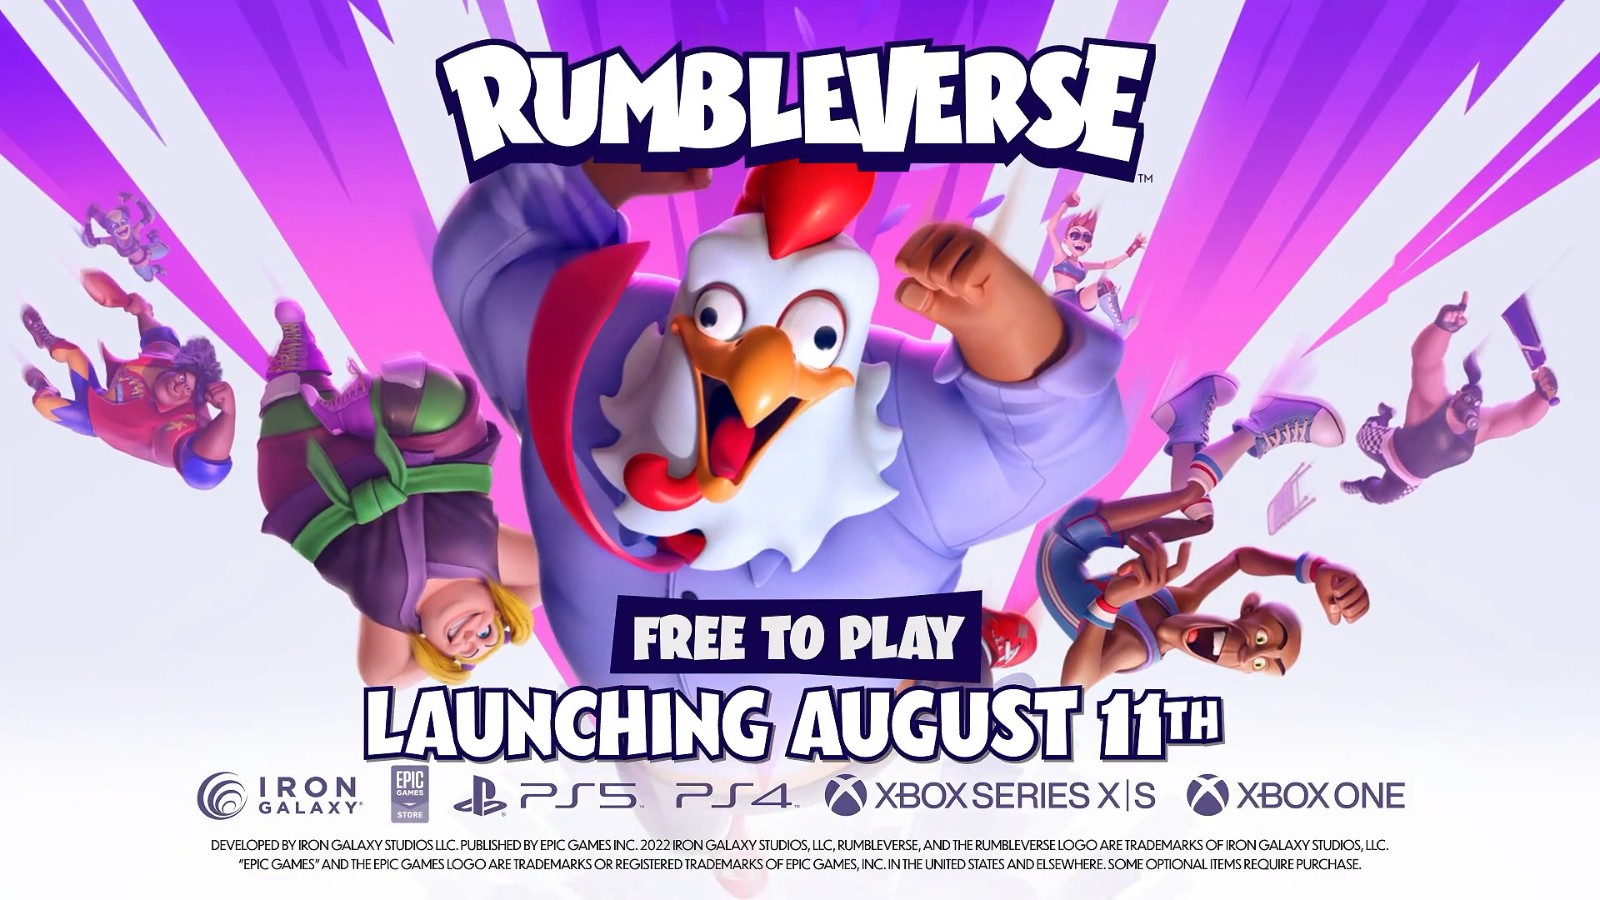 免費多人遊戲《Rumbleverse》8月11日發售 新預告發布